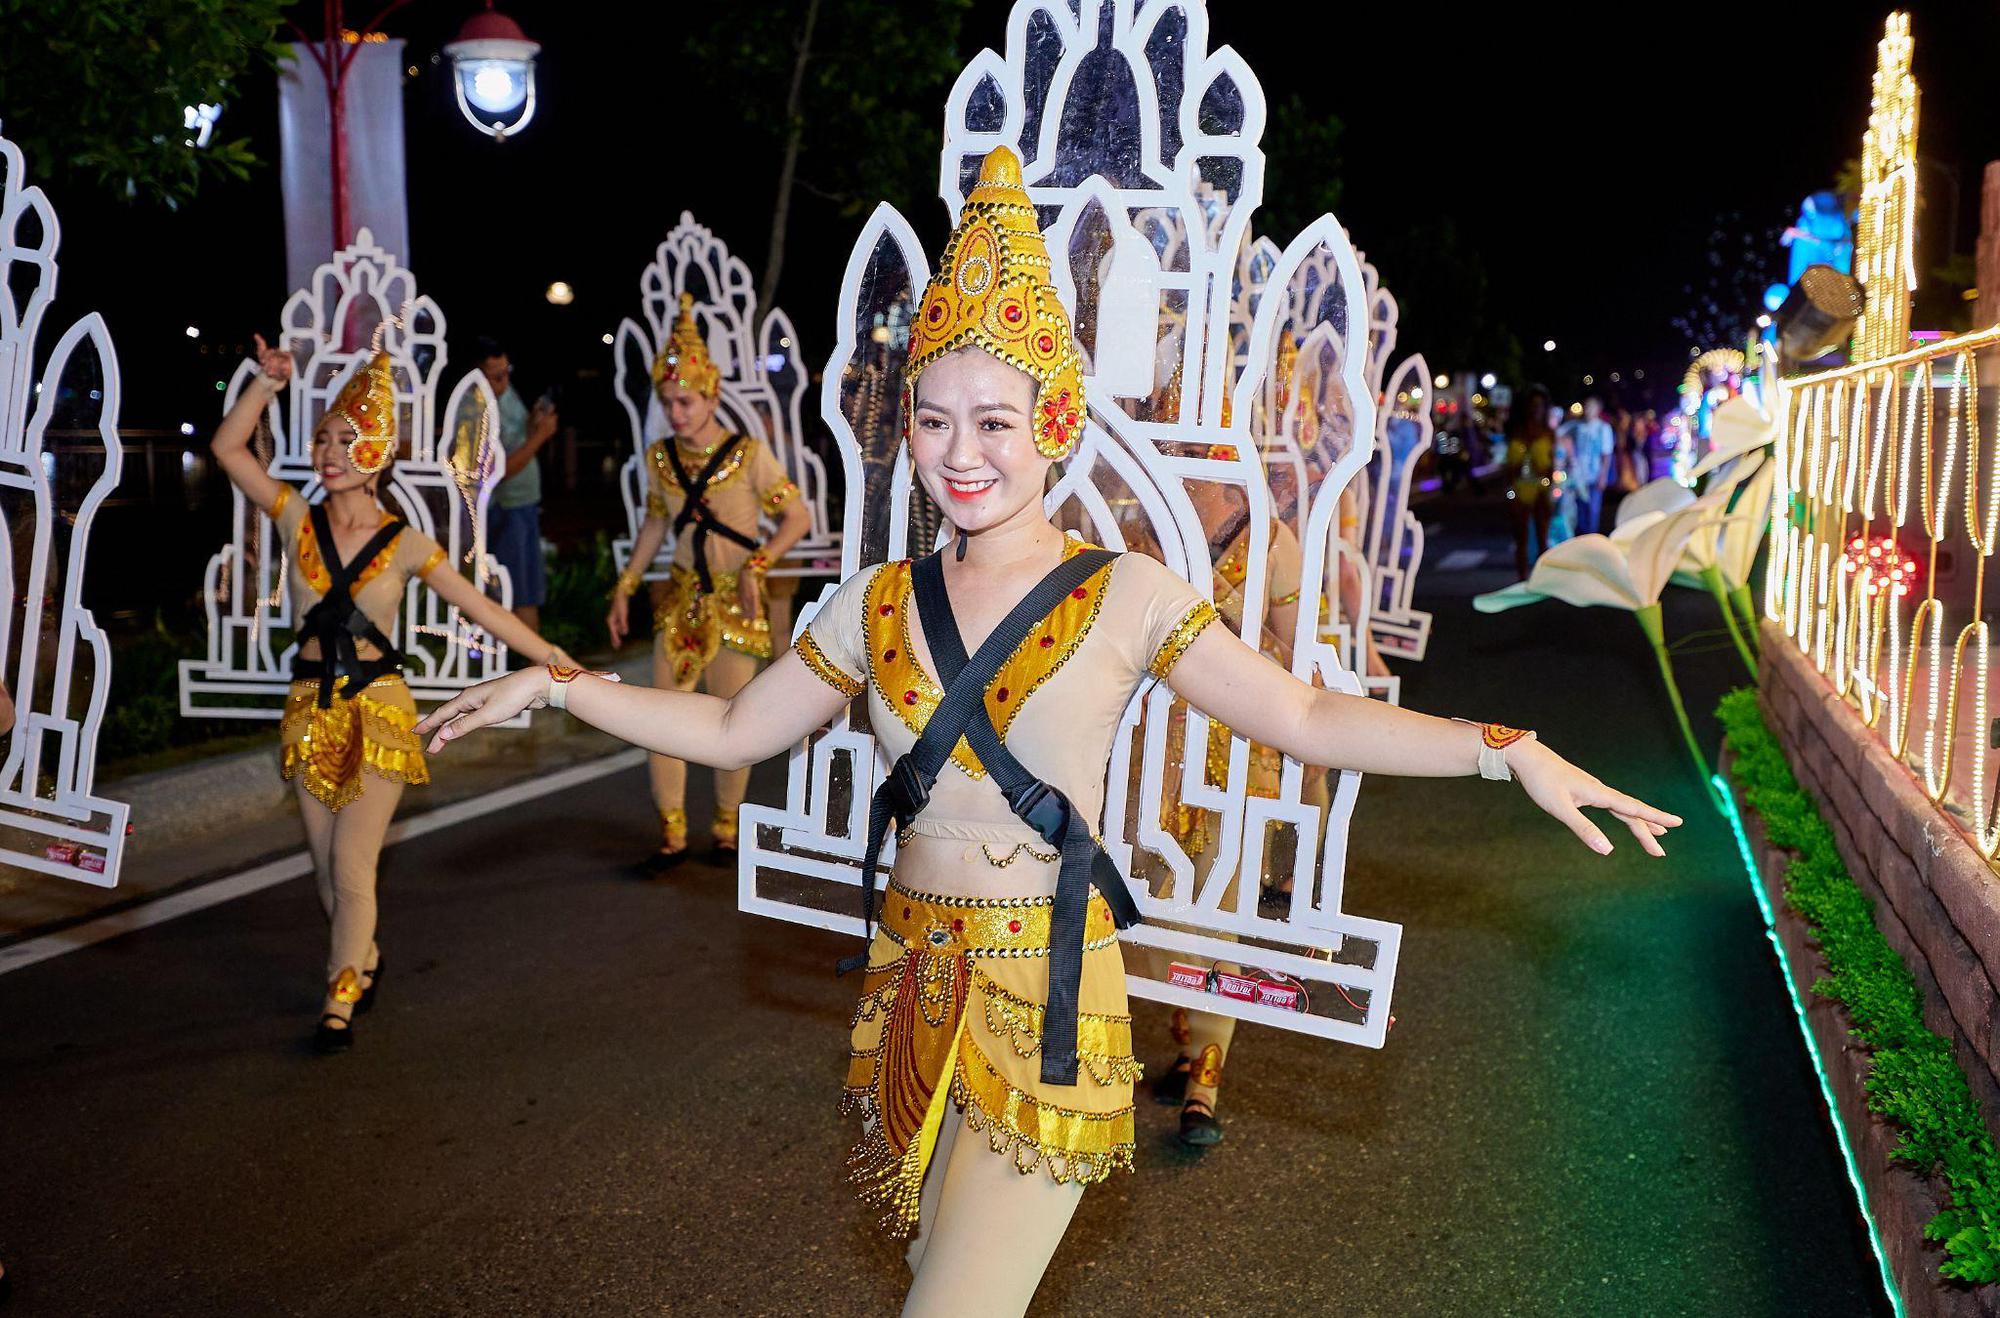 Đà Nẵng náo nhiệt với đêm lễ hội Carnival đường phố Sun Fest đầu tiên - Ảnh 1.